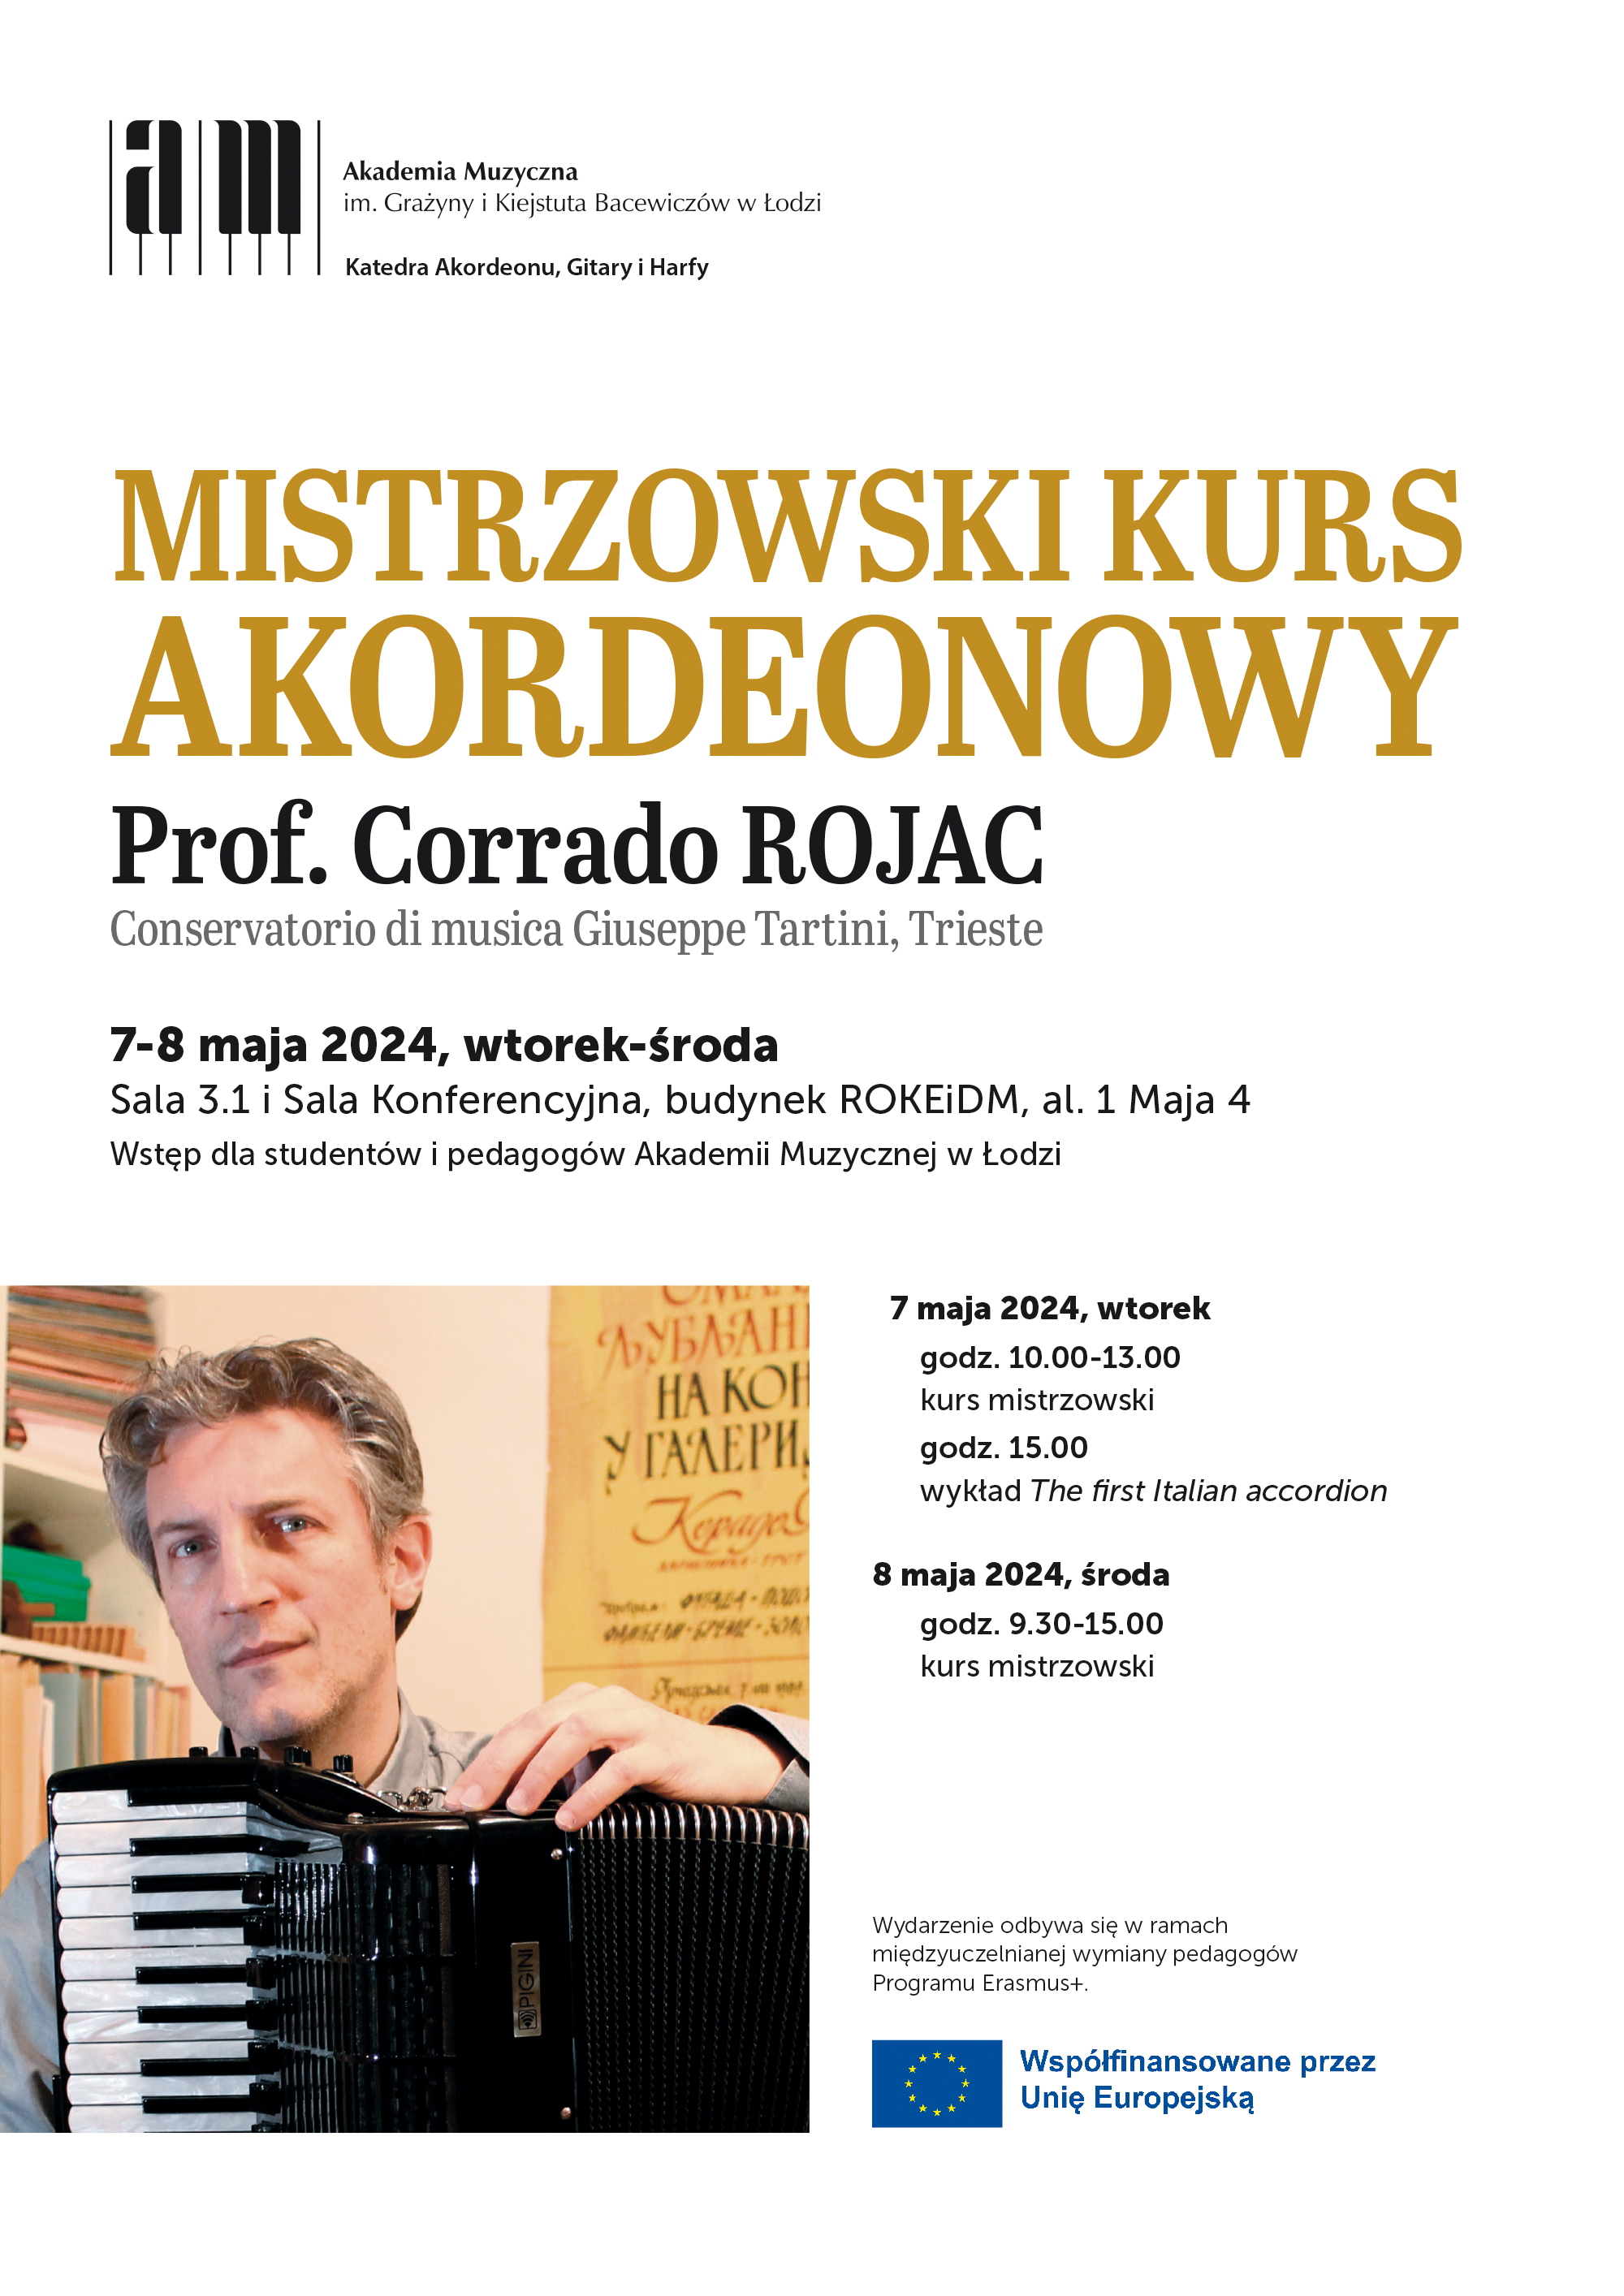 MISTRZOWSKI KURS AKORDEONOWY z prof. Corrado ROJAC